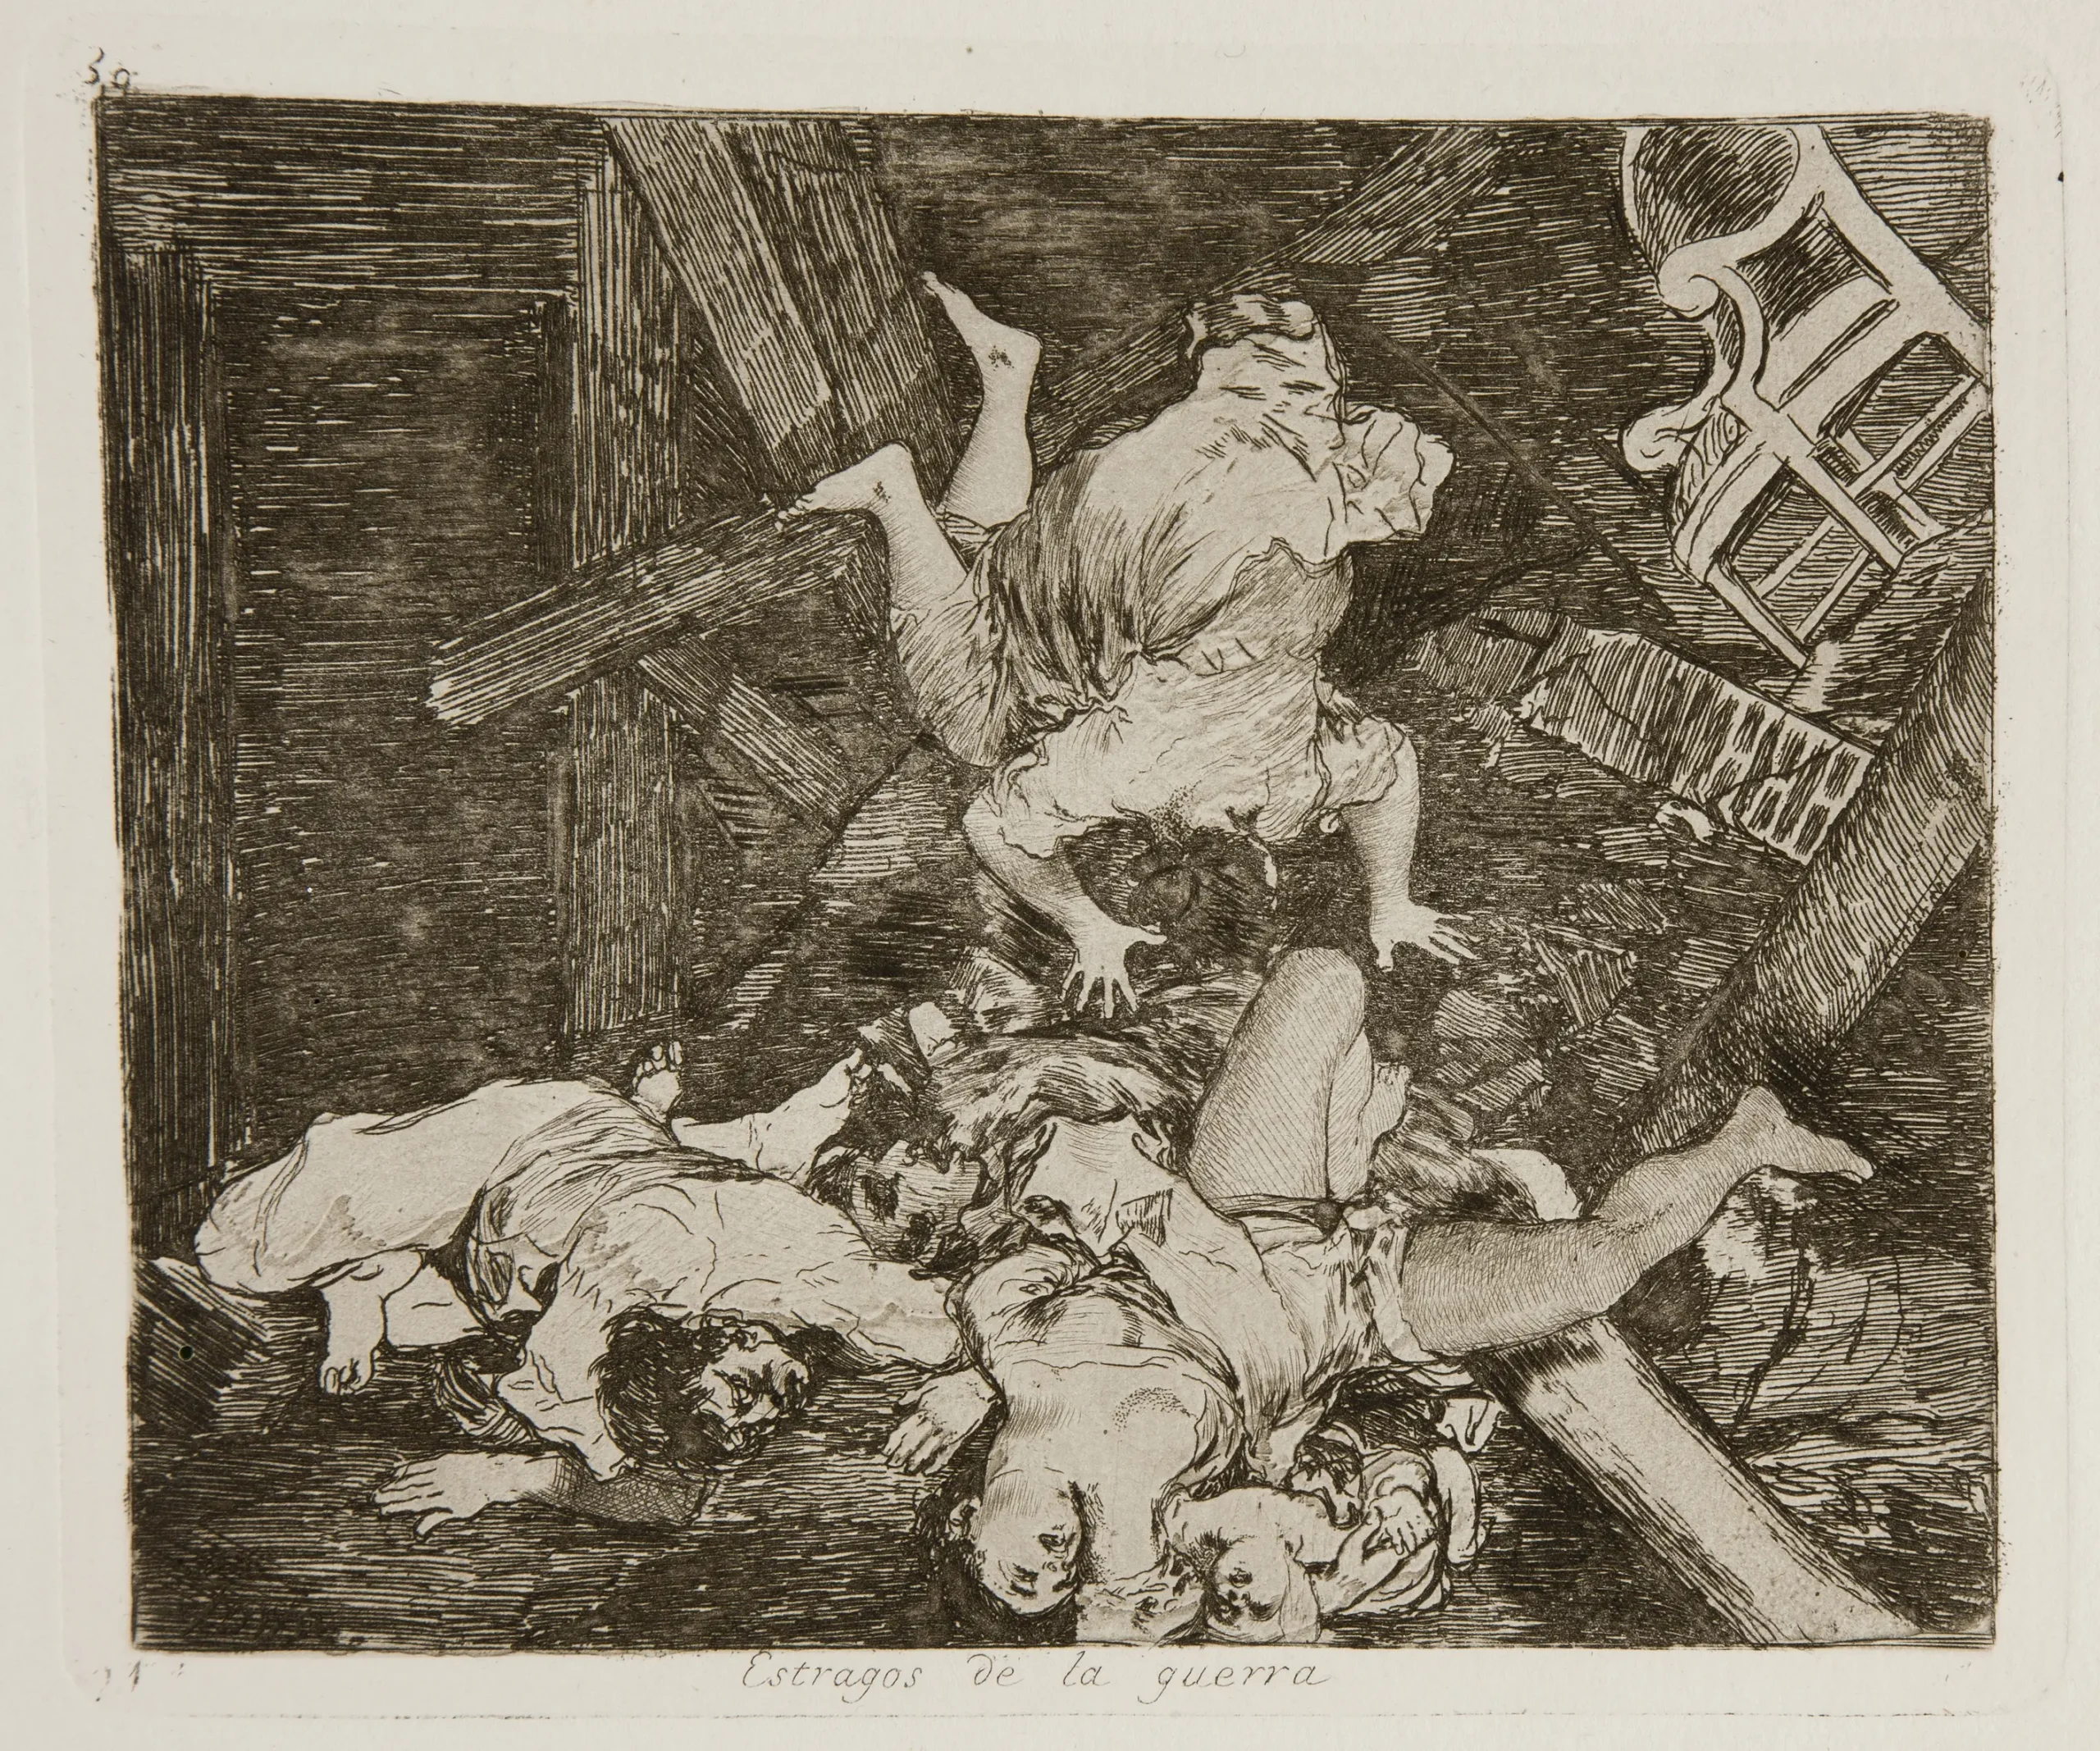 desastres de la guerra goya museo del prado - Qué técnica utiliza Goya en Los desastres de la guerra